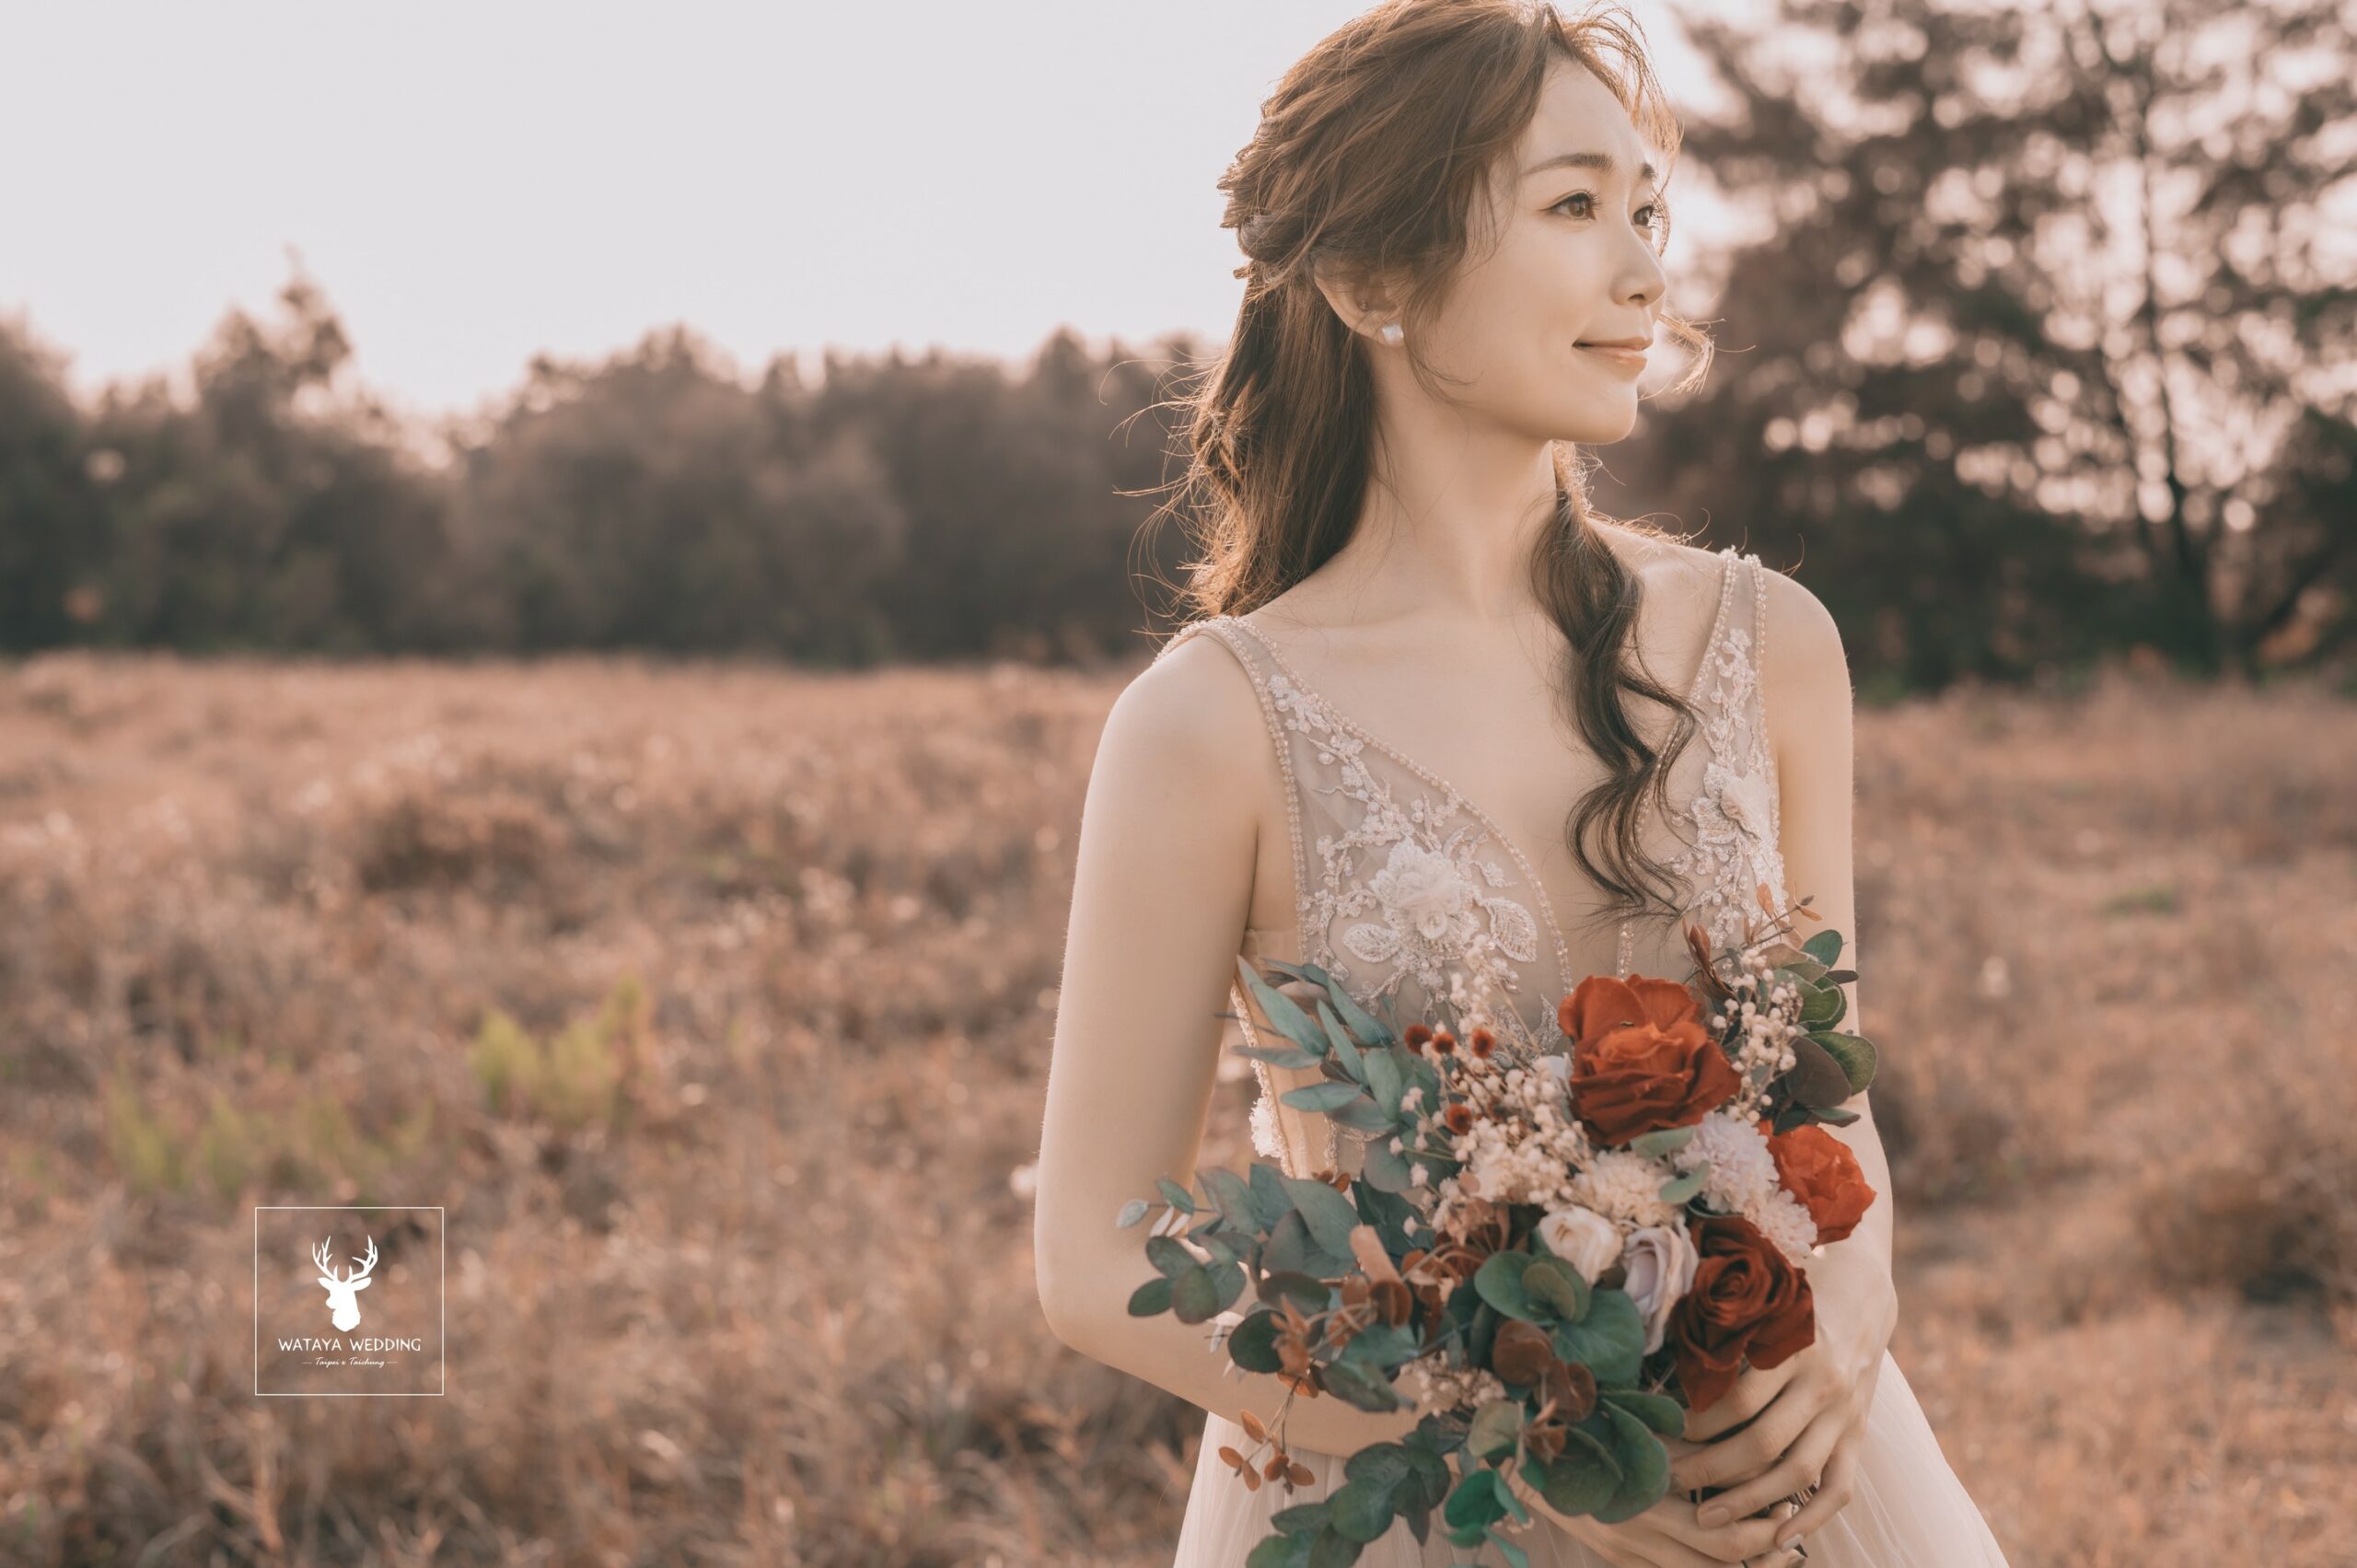 綿谷結婚式-婚紗攝影作品 (36)